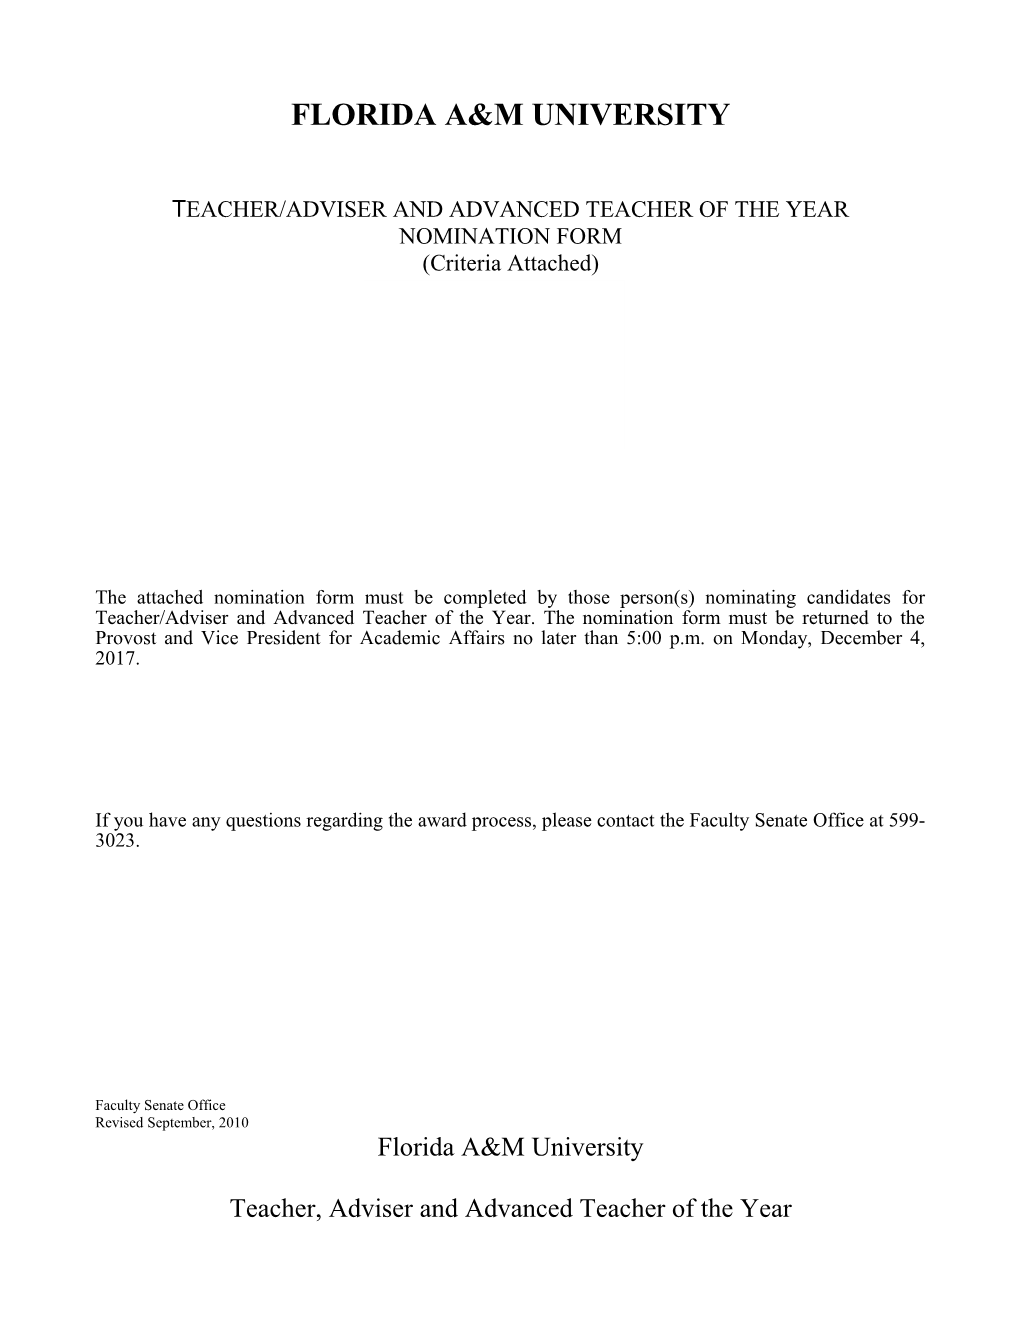 Teacher/Adviser and Advanced Teacher of the Year